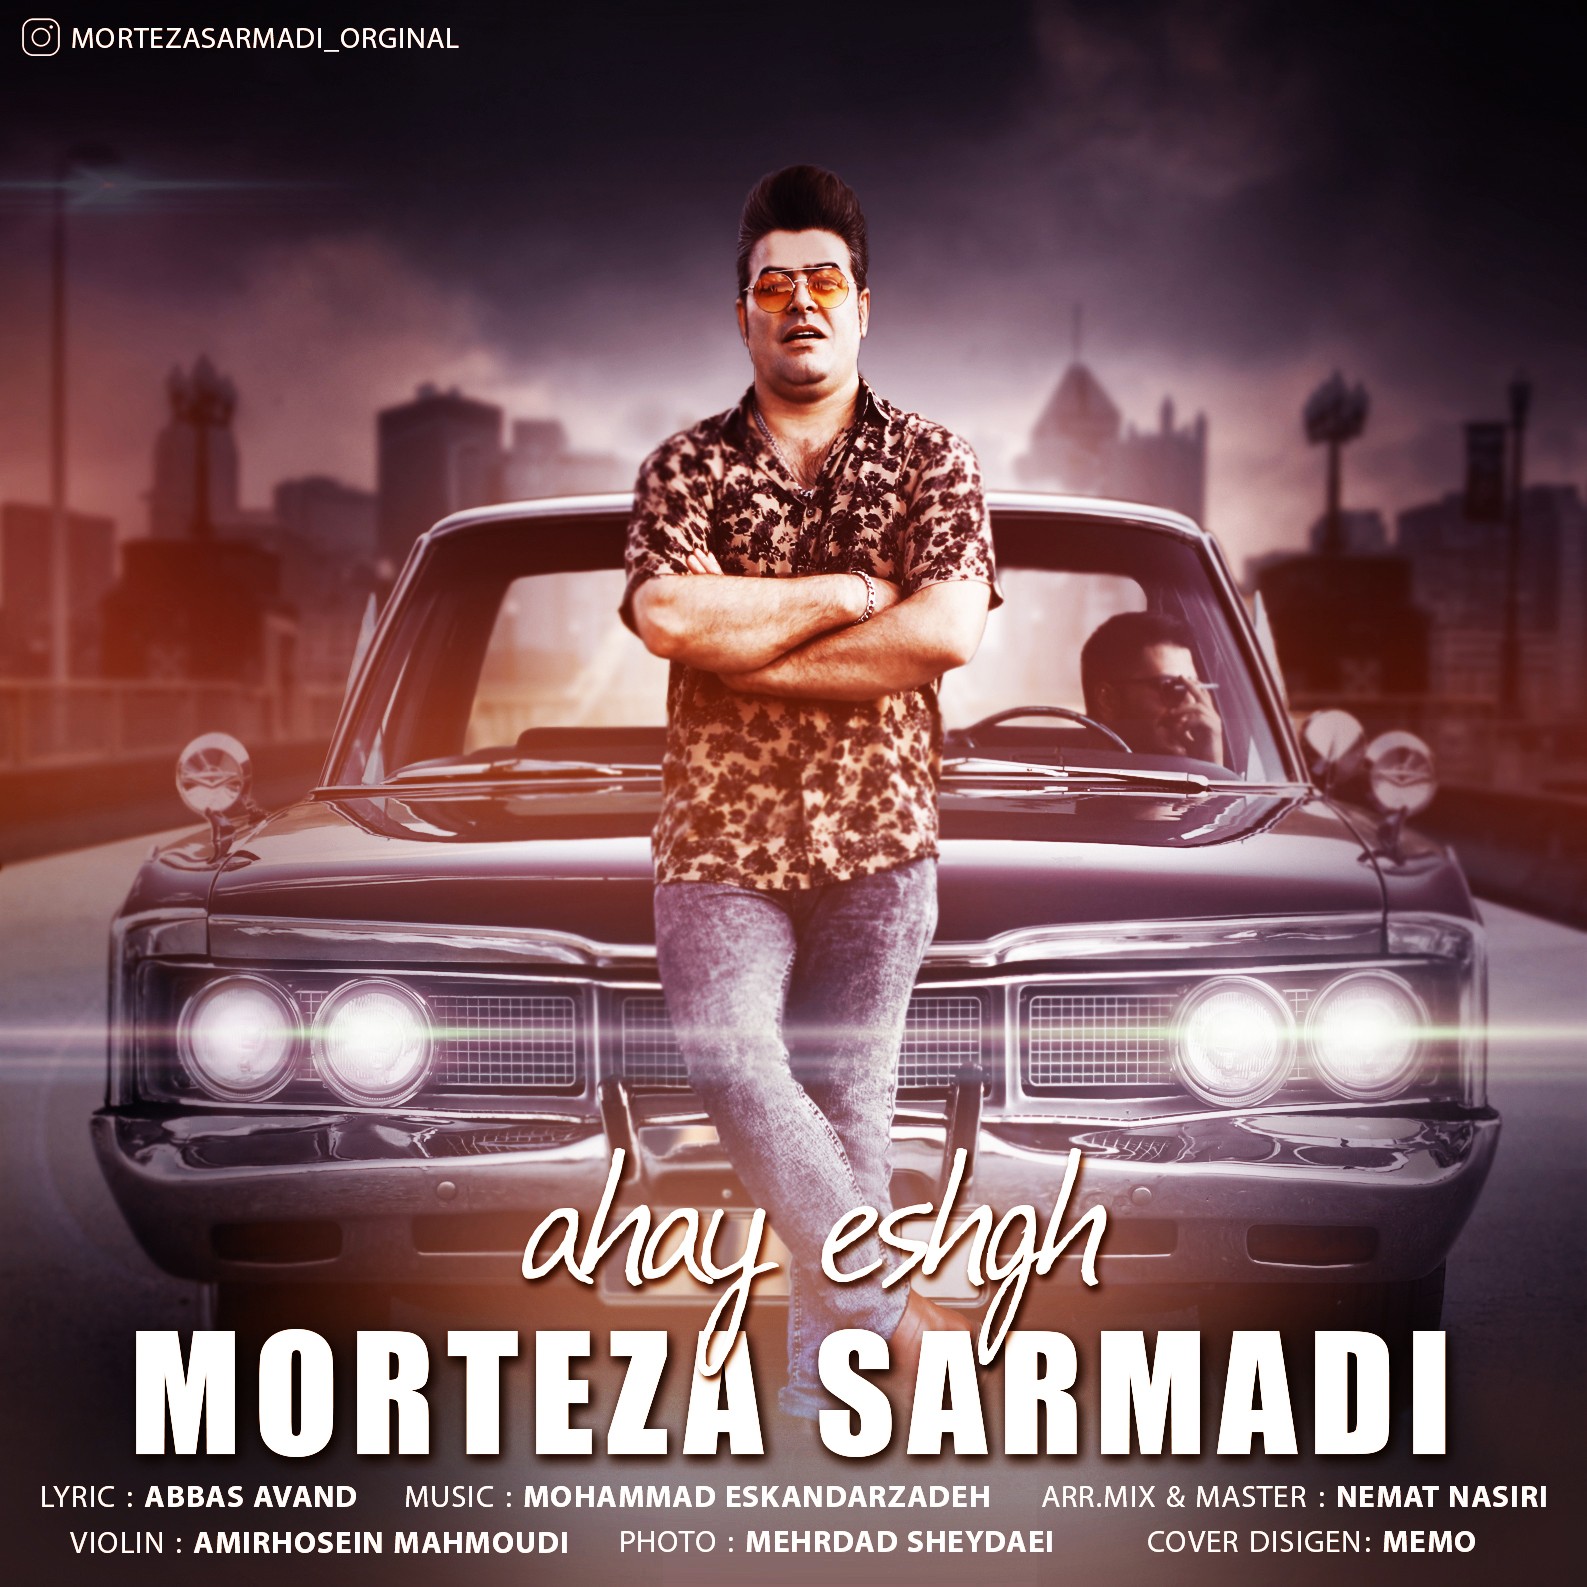  دانلود آهنگ جدید مرتضی سرمدی - آهای عشق | Download New Music By Morteza Sarmadi - Ahay Eshgh